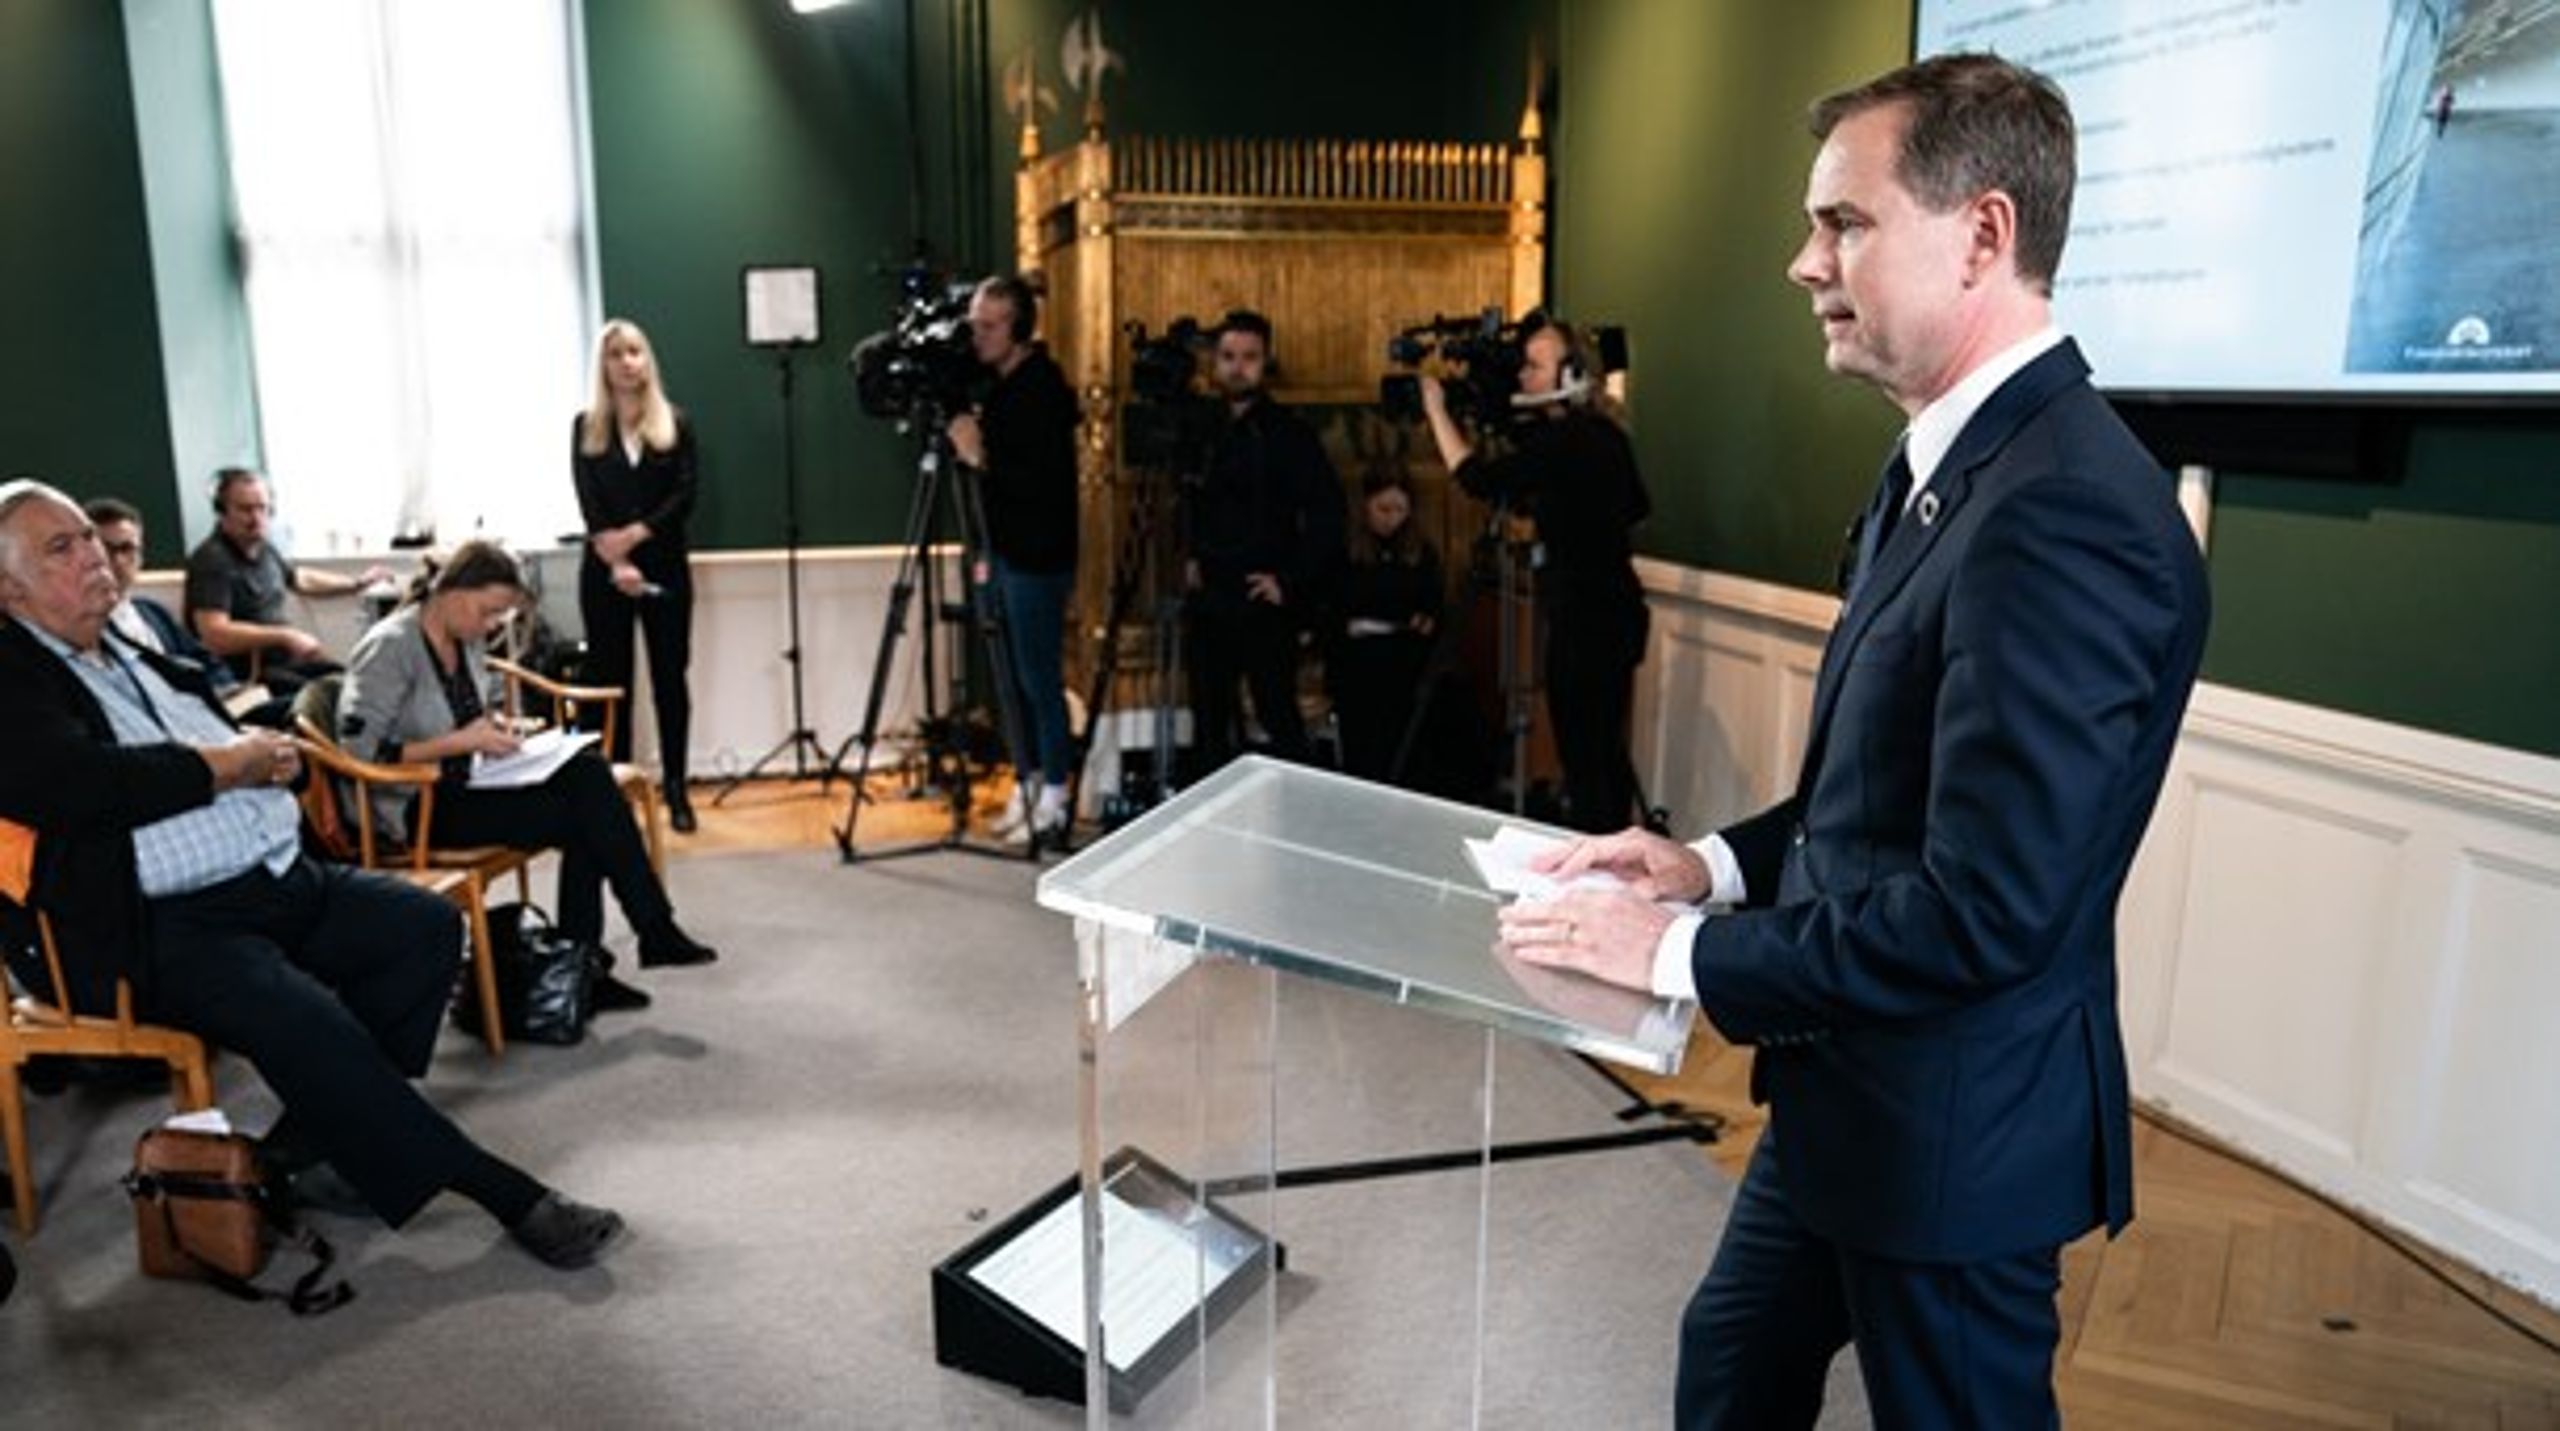 Finansminister Nicolai Wammen (S) præsenterede finanslovsforslaget på et pressemøde onsdag klokken 12.